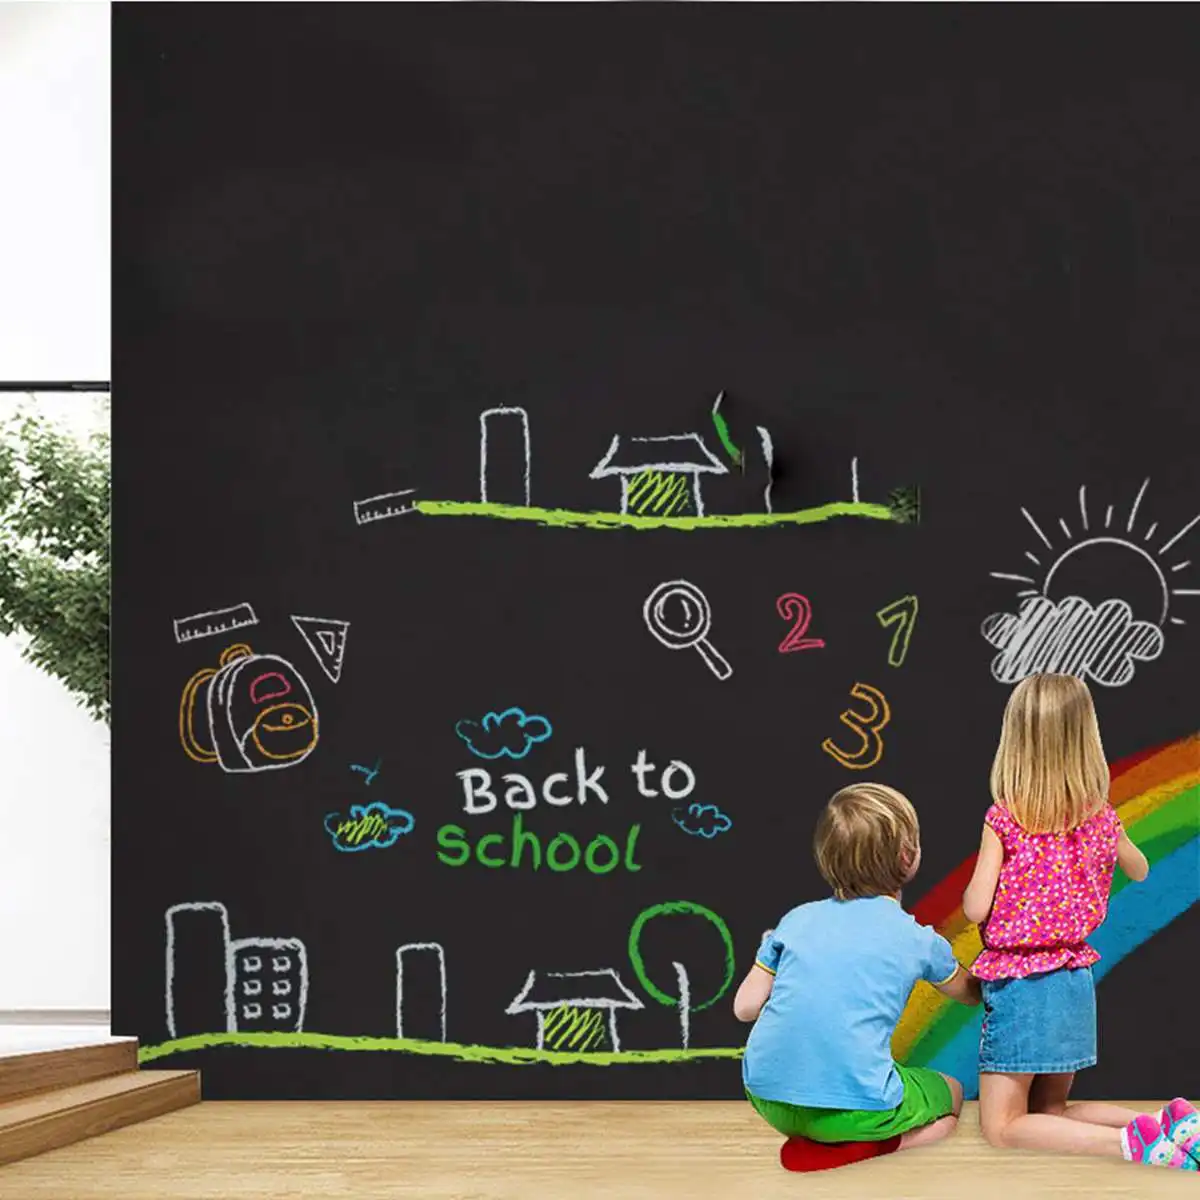 A4 Childrens Chalkboard, Wooden Blackboard Chalk board Eraser Kids Art  Drawing